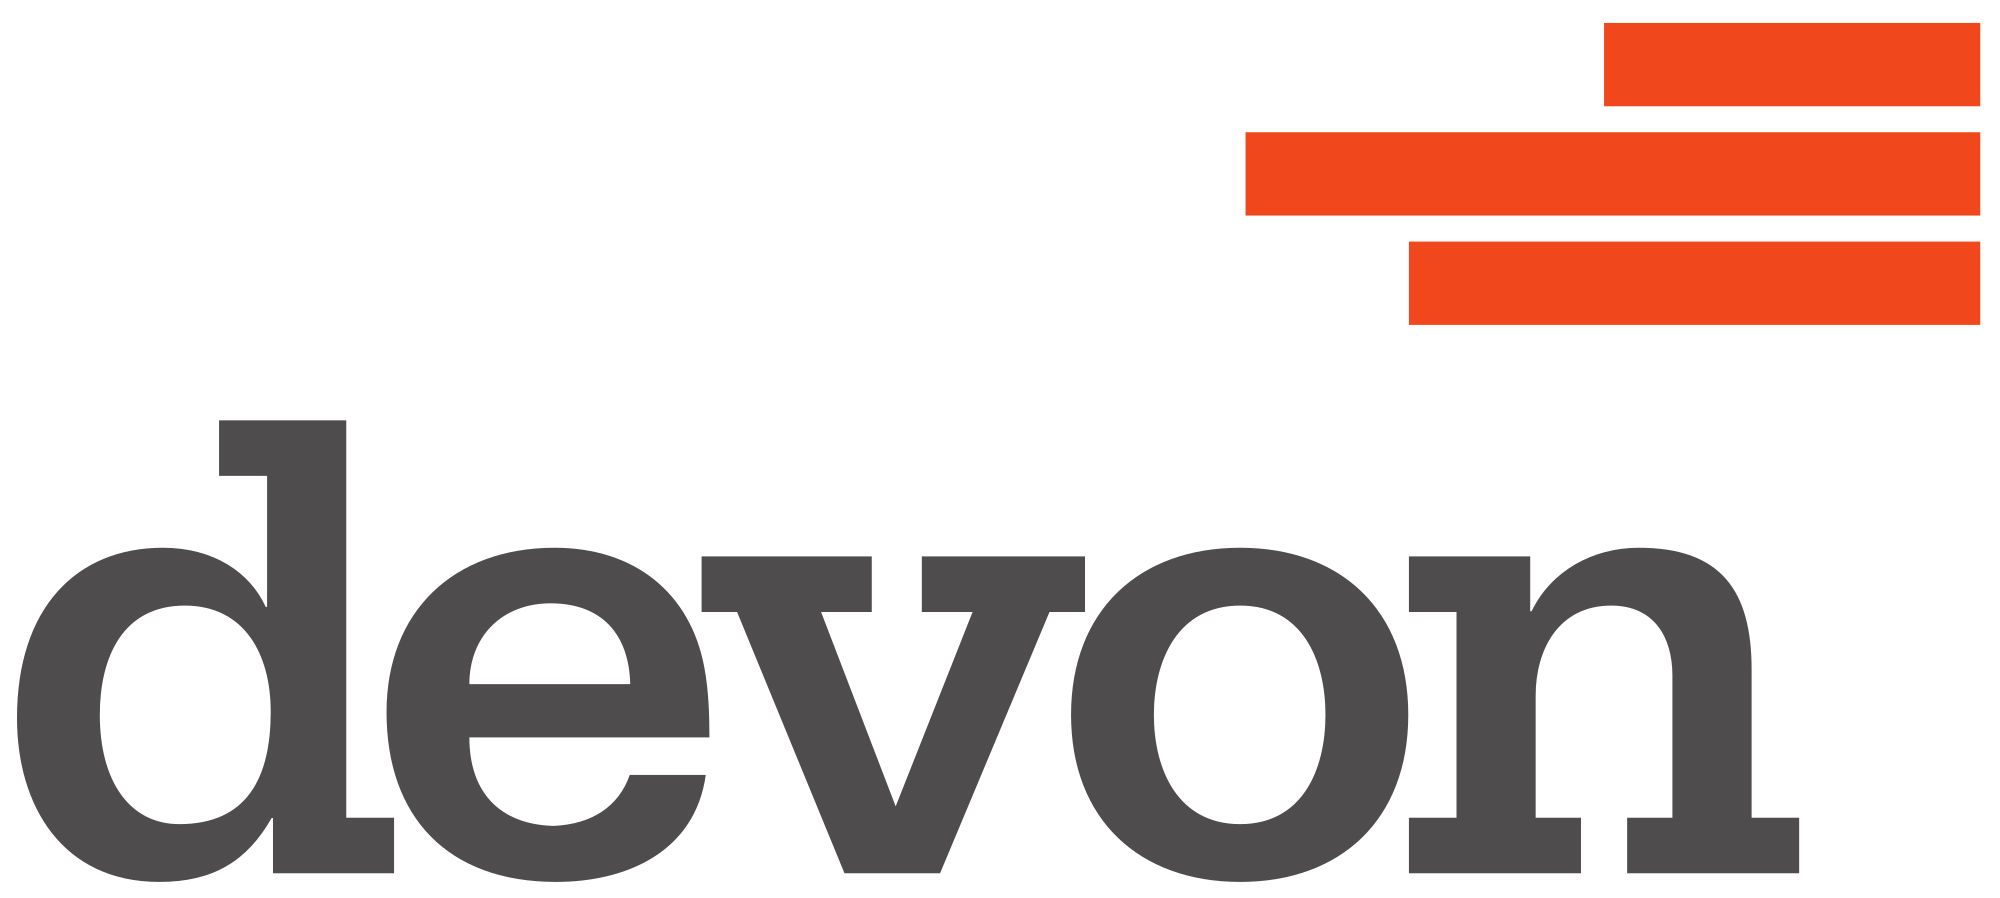 Xto Energy vector logo